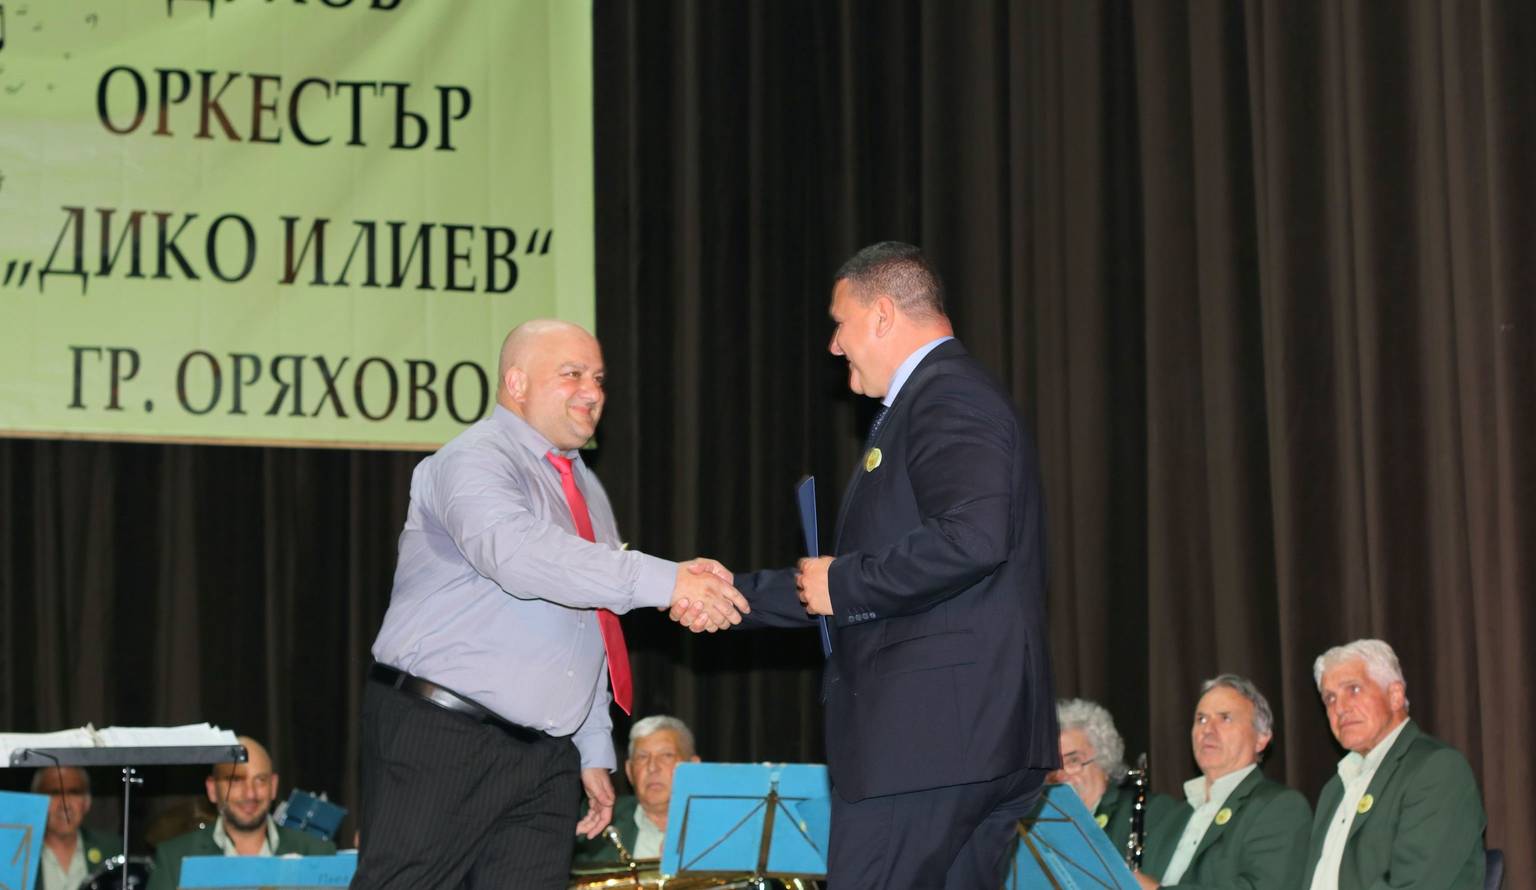 Кметът Росен Добрев поздравява ръководителят на оркестъра Калоян Трайков